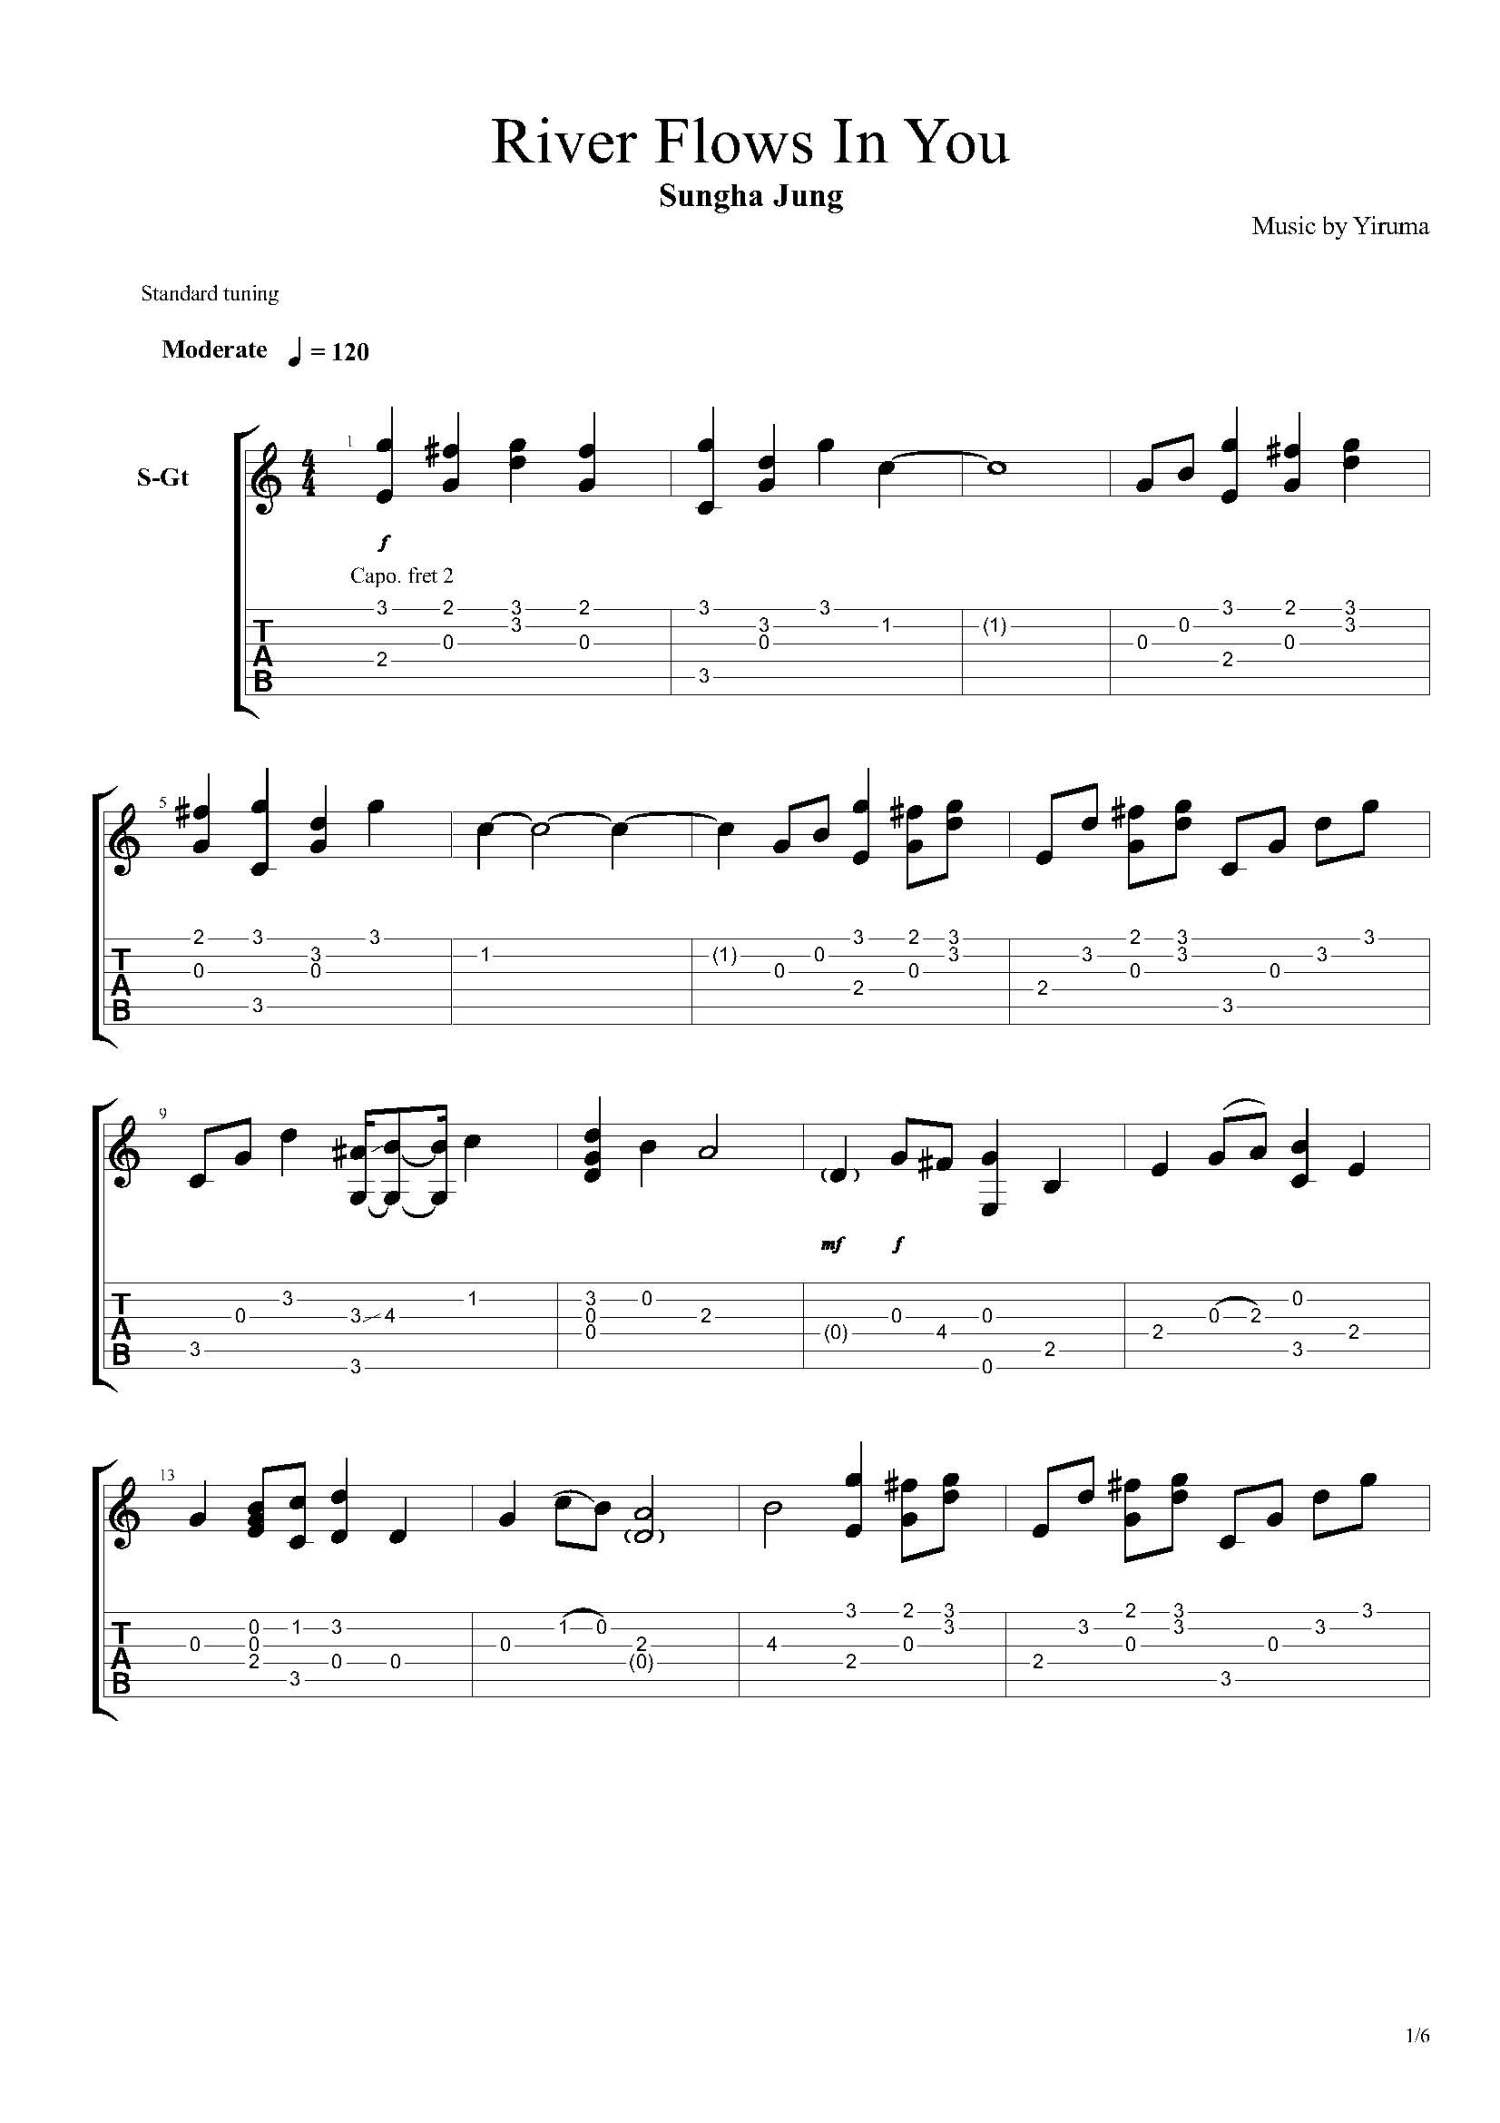 Yiruma-River Flows In You Guitar Sheet pdf, - Free Score Download ★